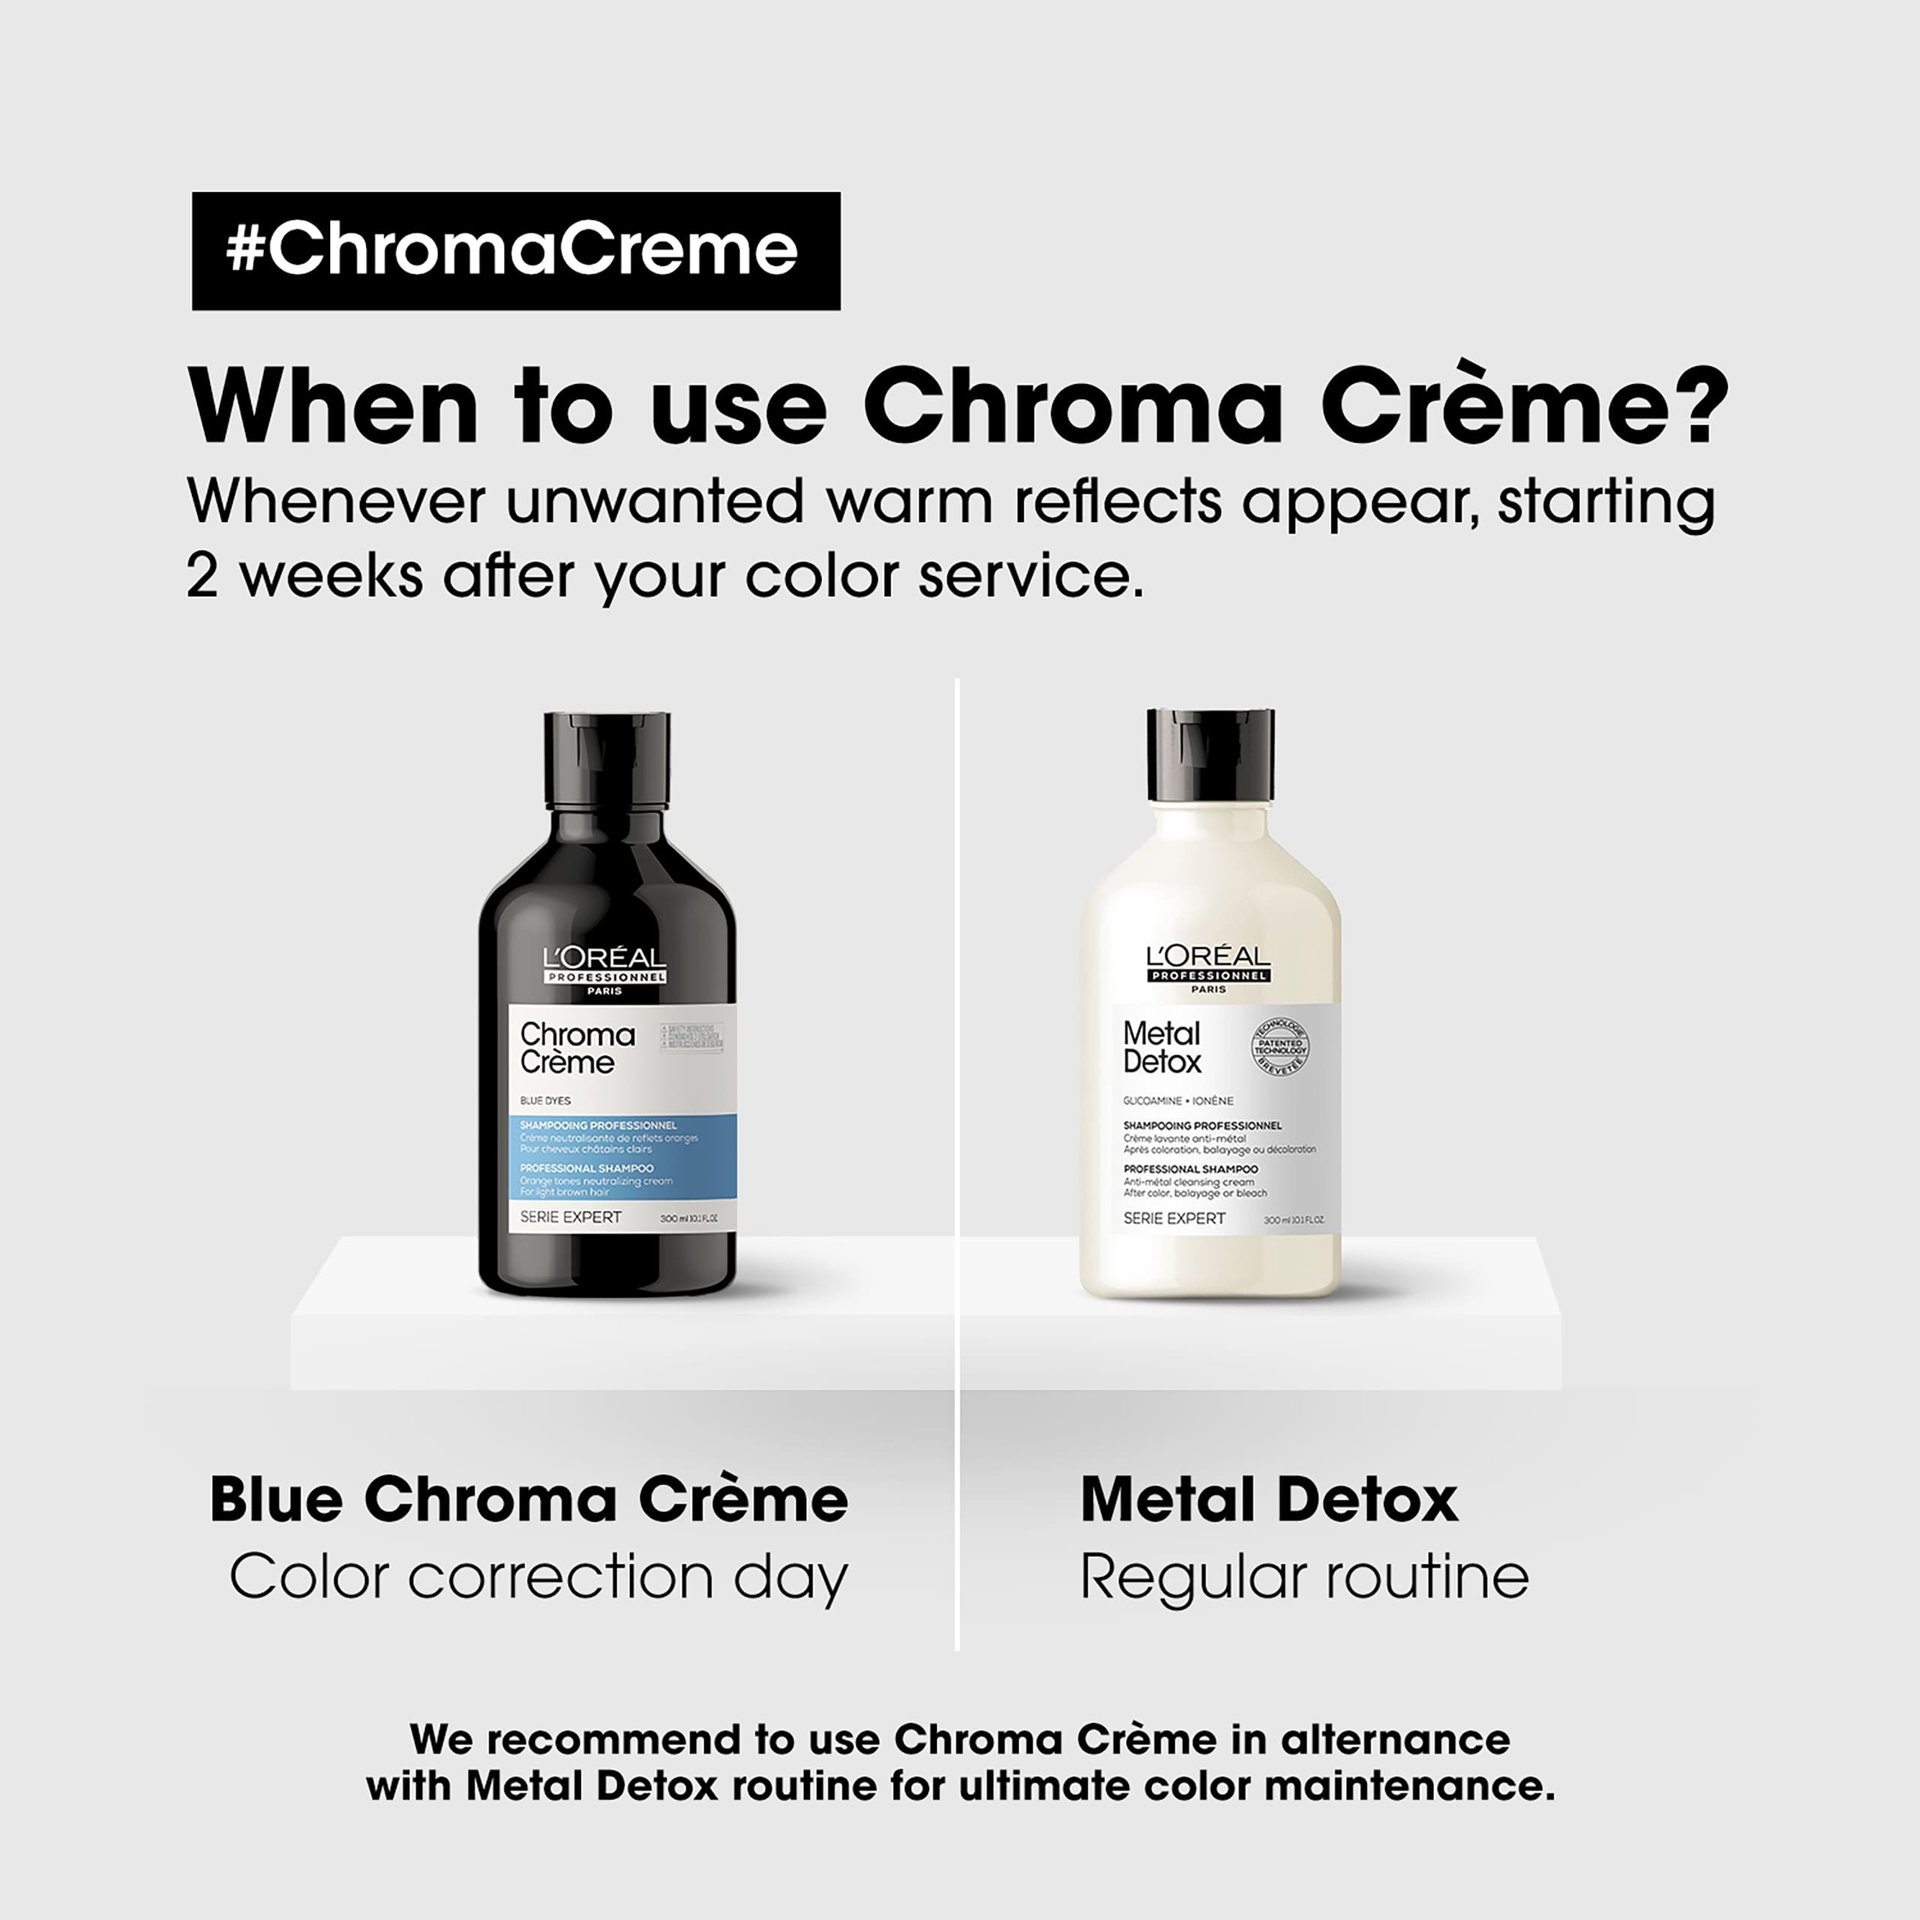 chroma-creme-shampoo-blue-neutralizes-orange-reflects3